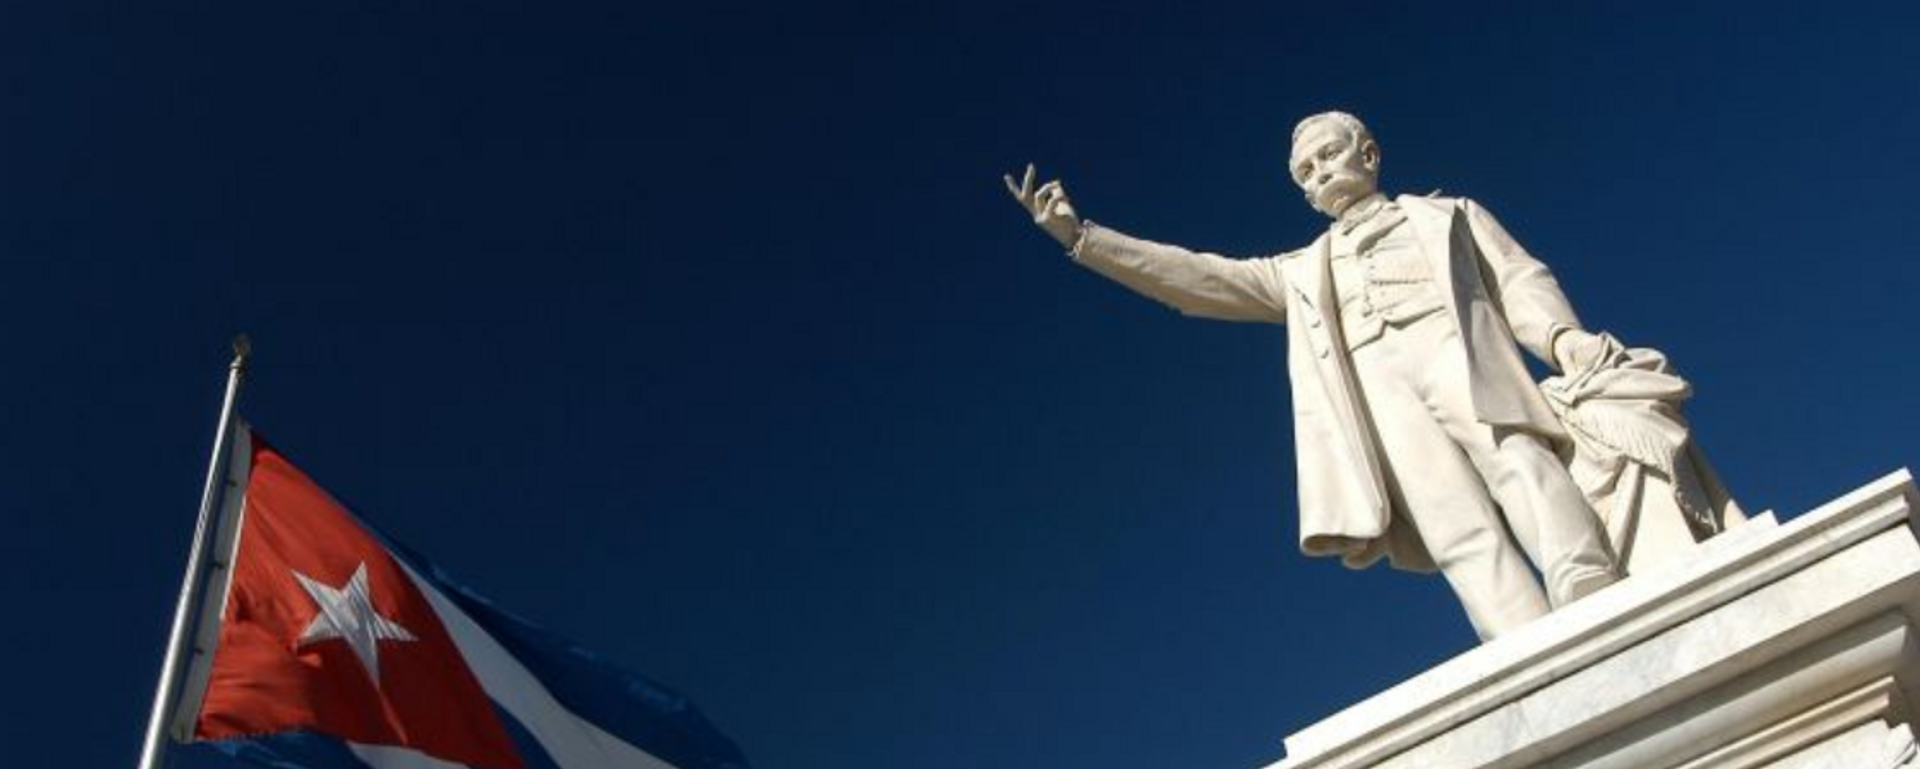 Monumento a José Martí en Cienfuegos, Cuba - Sputnik Mundo, 1920, 28.01.2020